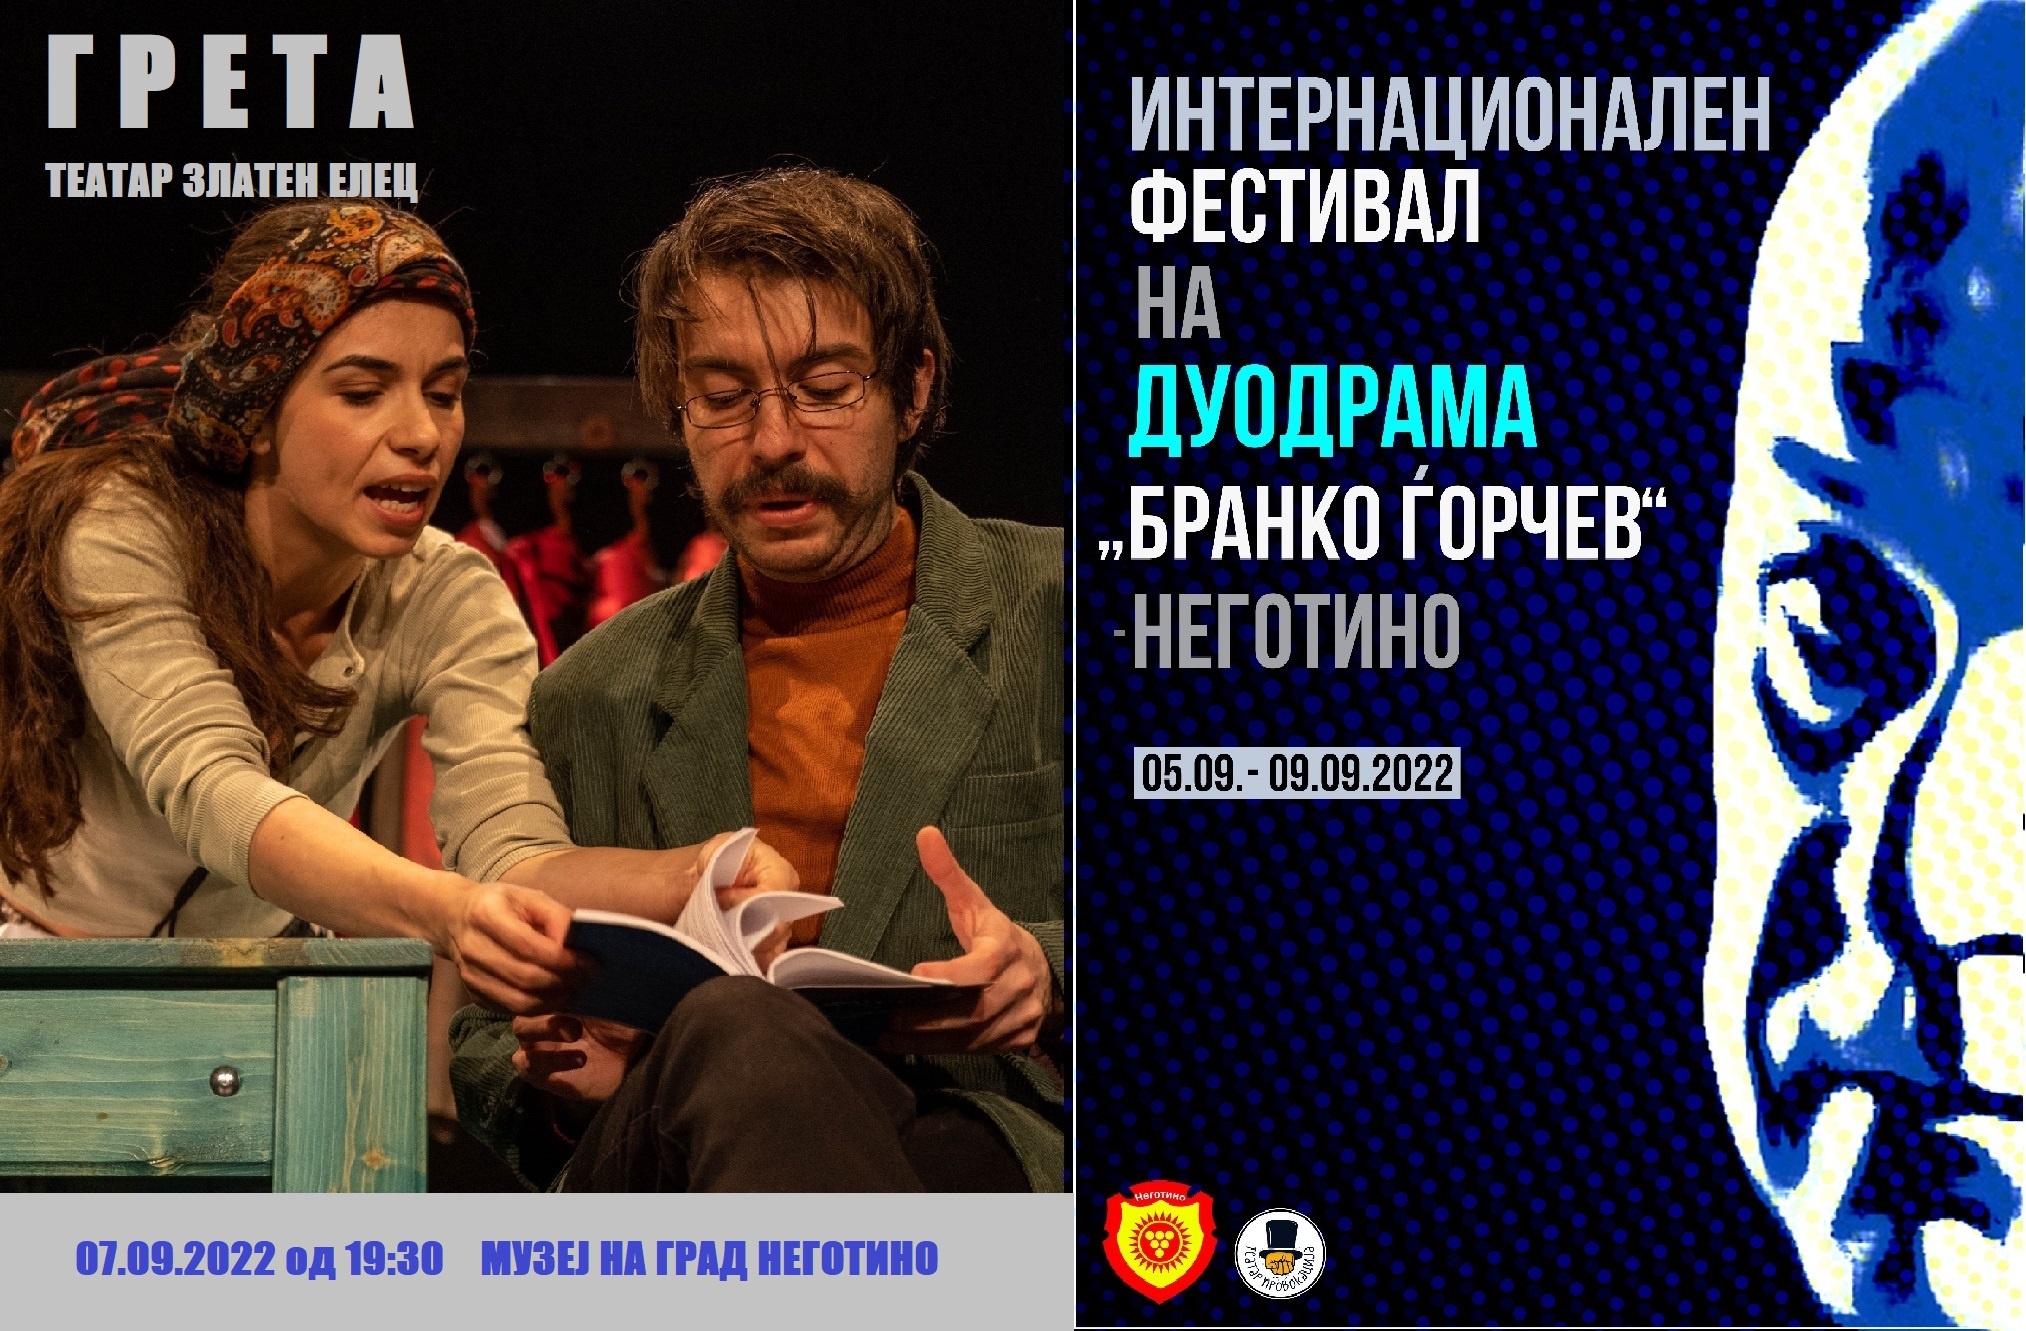 Театар Провокација во Неготино и Скопје со дуо драма “Бранко Ѓорчев” и претставата “ГРЕТА”